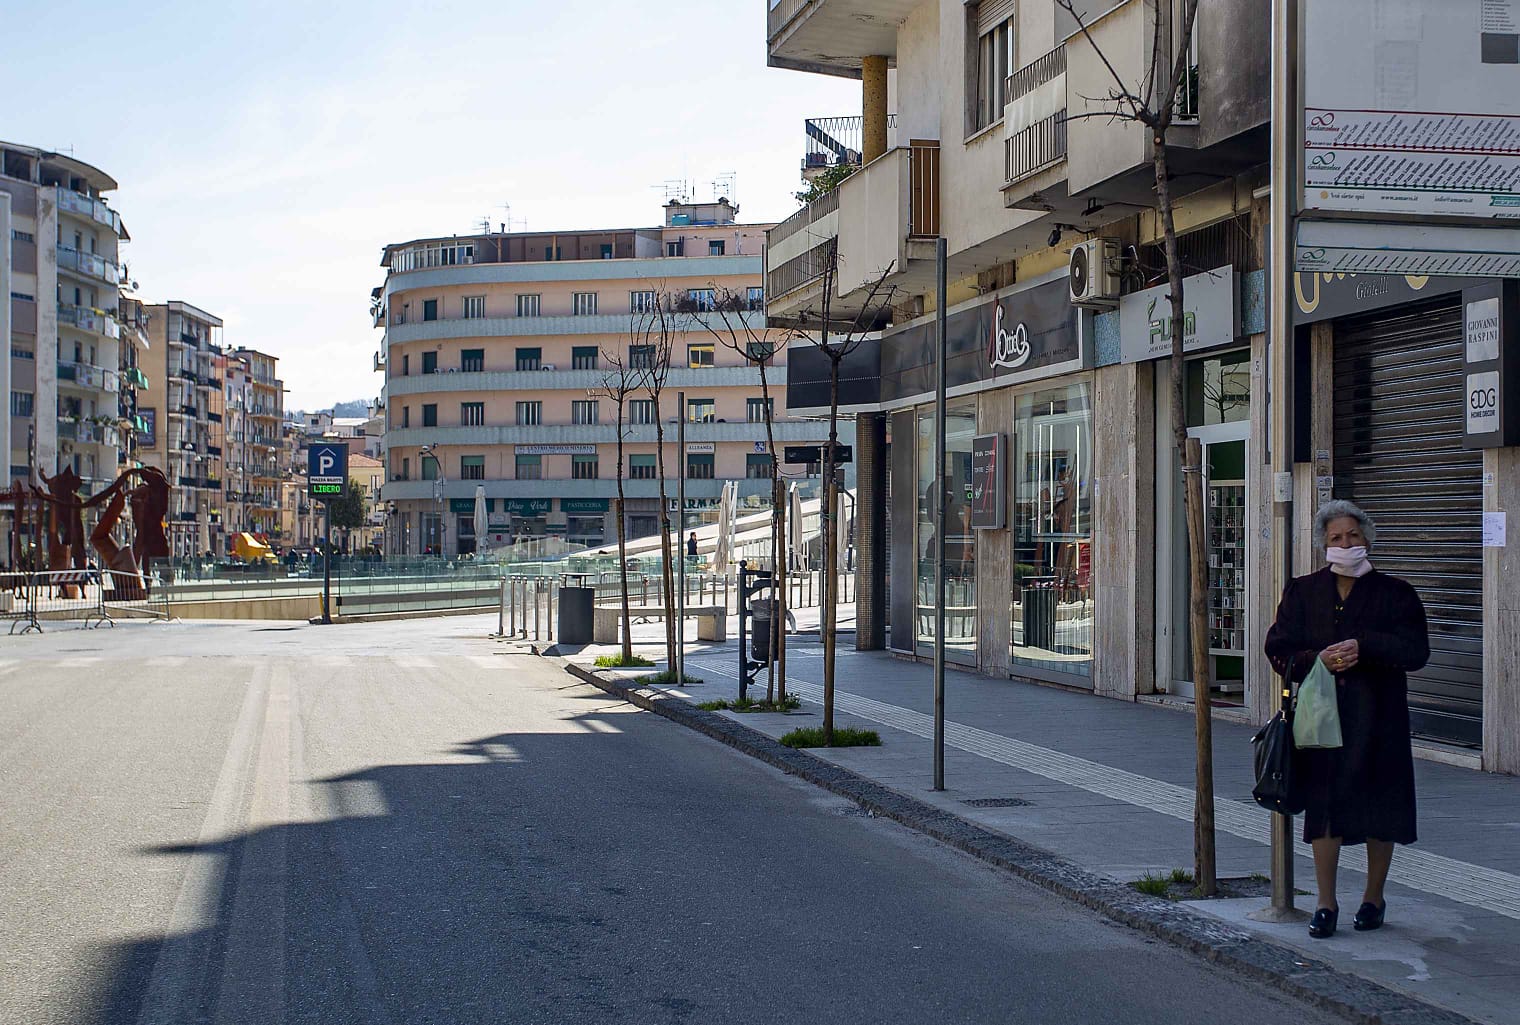 Dpcm: preoccupazione in Calabria, incertezza dopo zona rossa